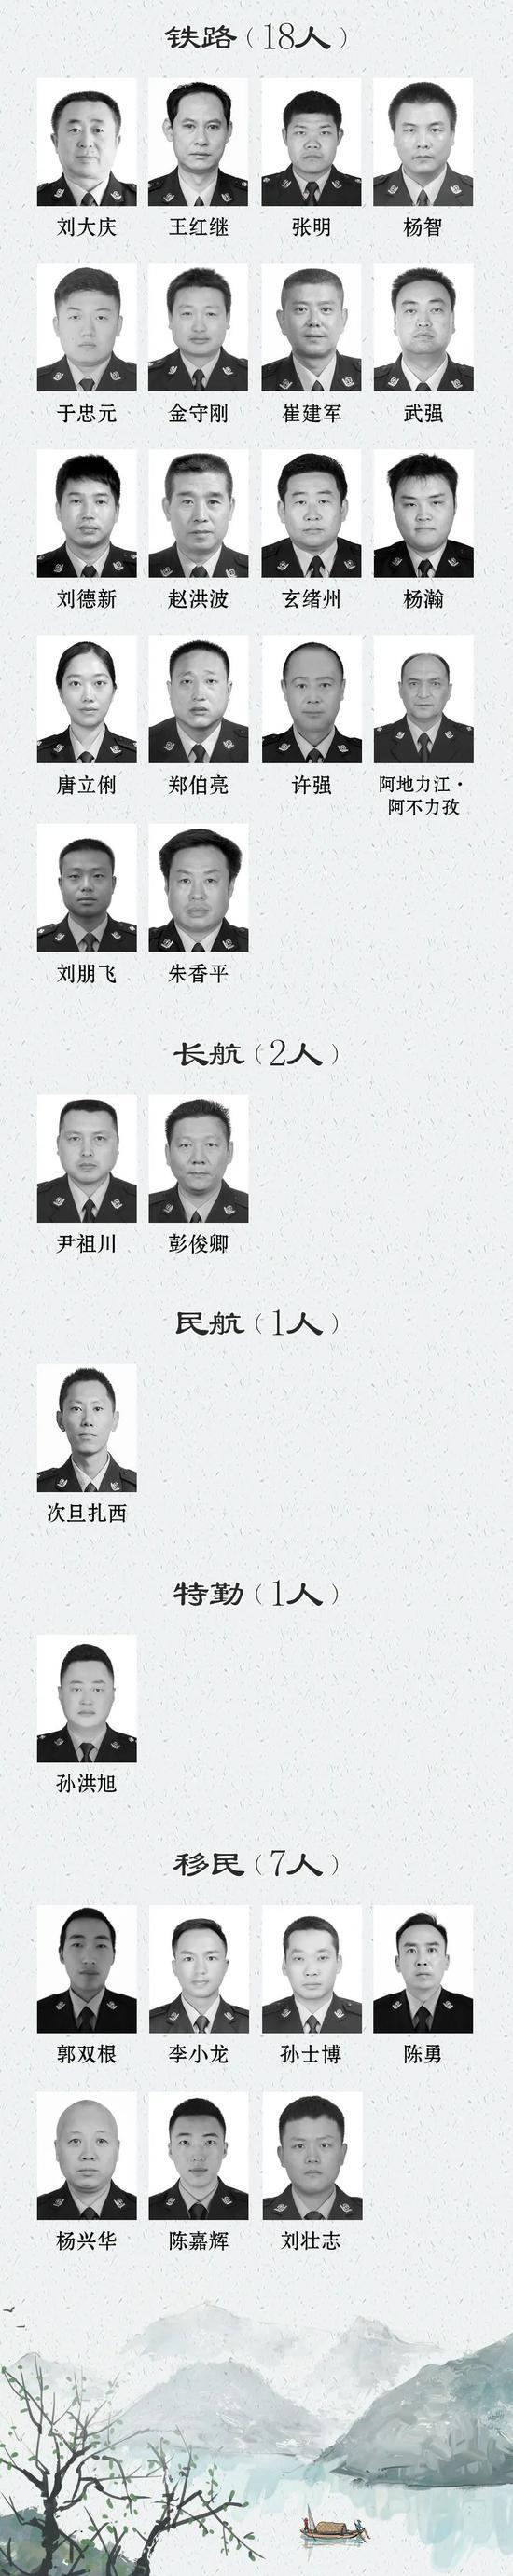 2020全国因公牺牲民警名单公布 广东云南人数最多